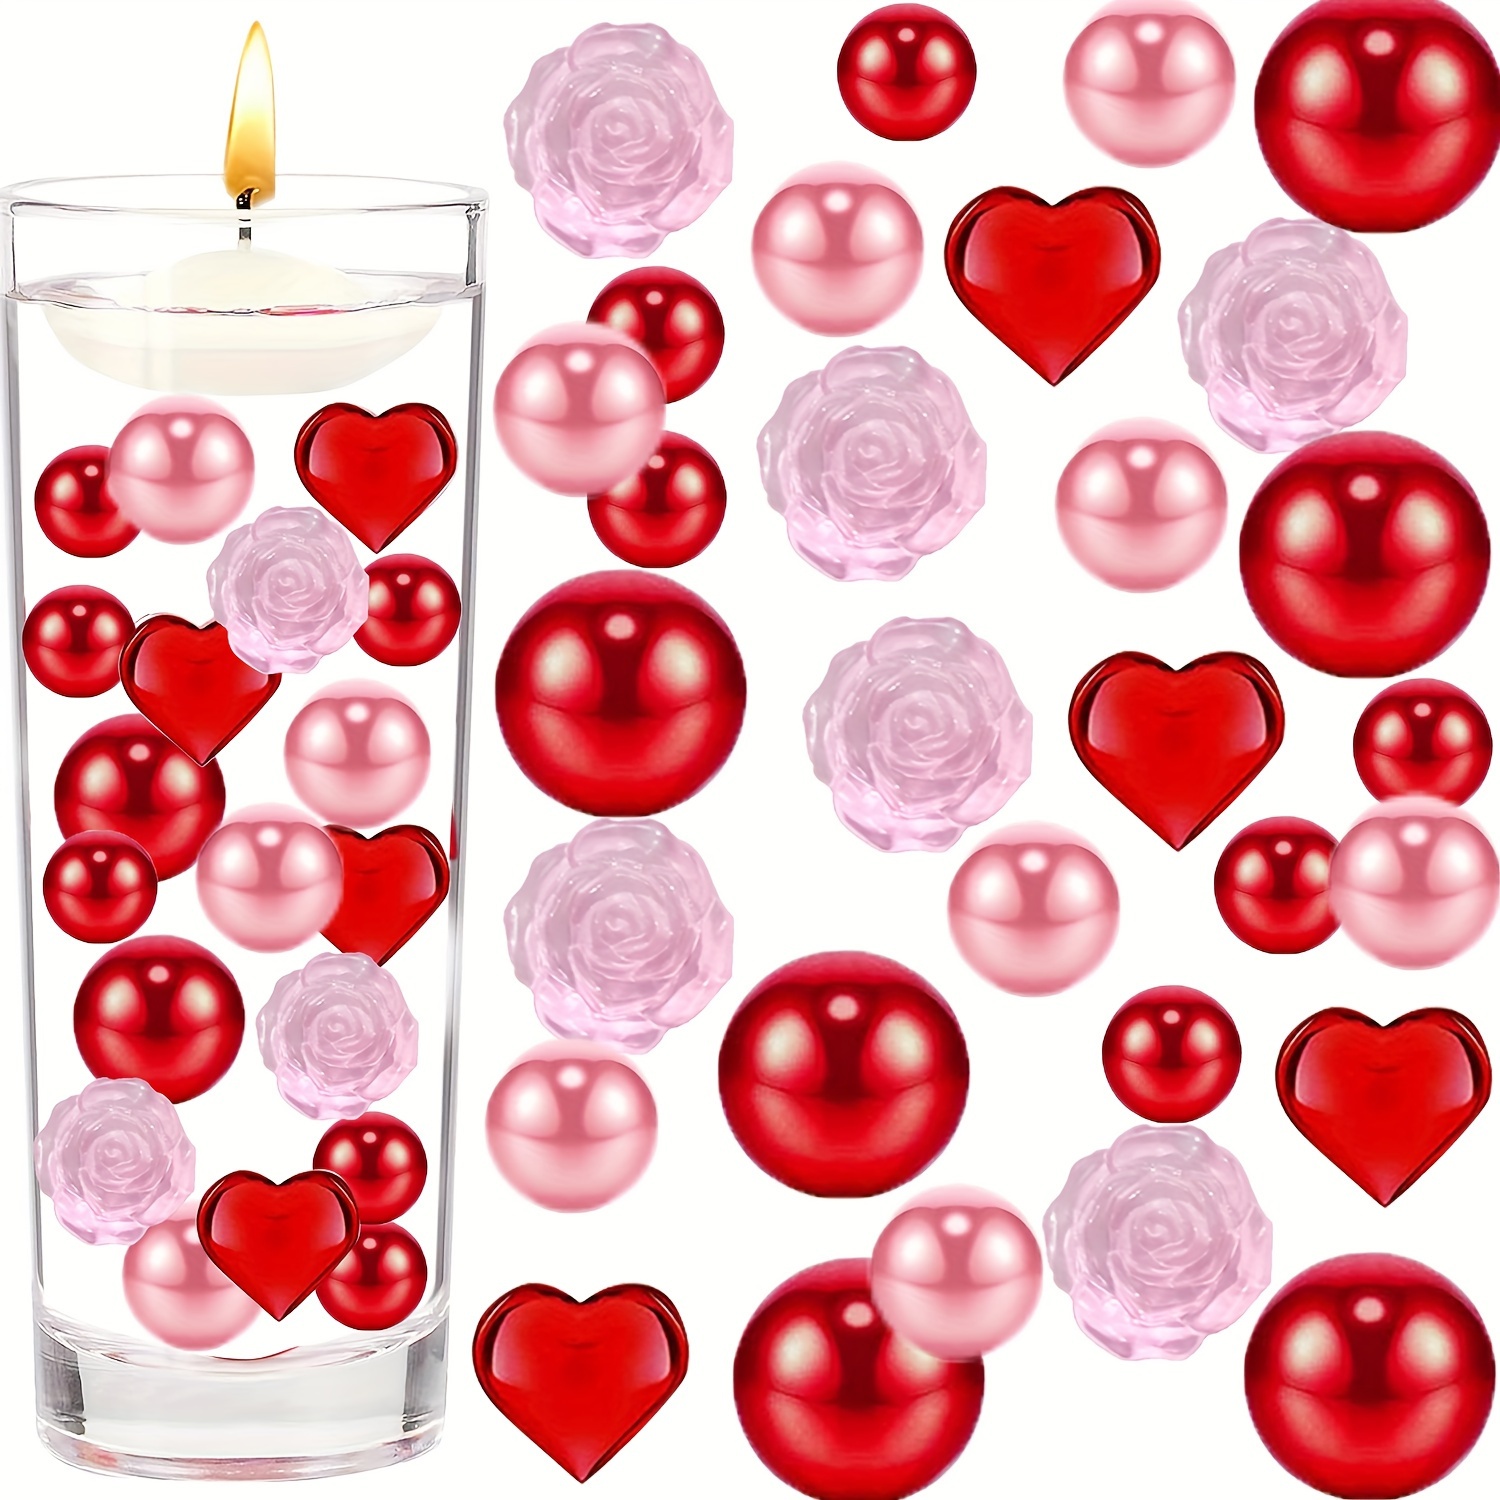 Valentines Day Vase Filler Crafts Red Pink Floating Pearls DIY Floating  Pearl Vase Filler Creative Desktop Home Decor Ornament